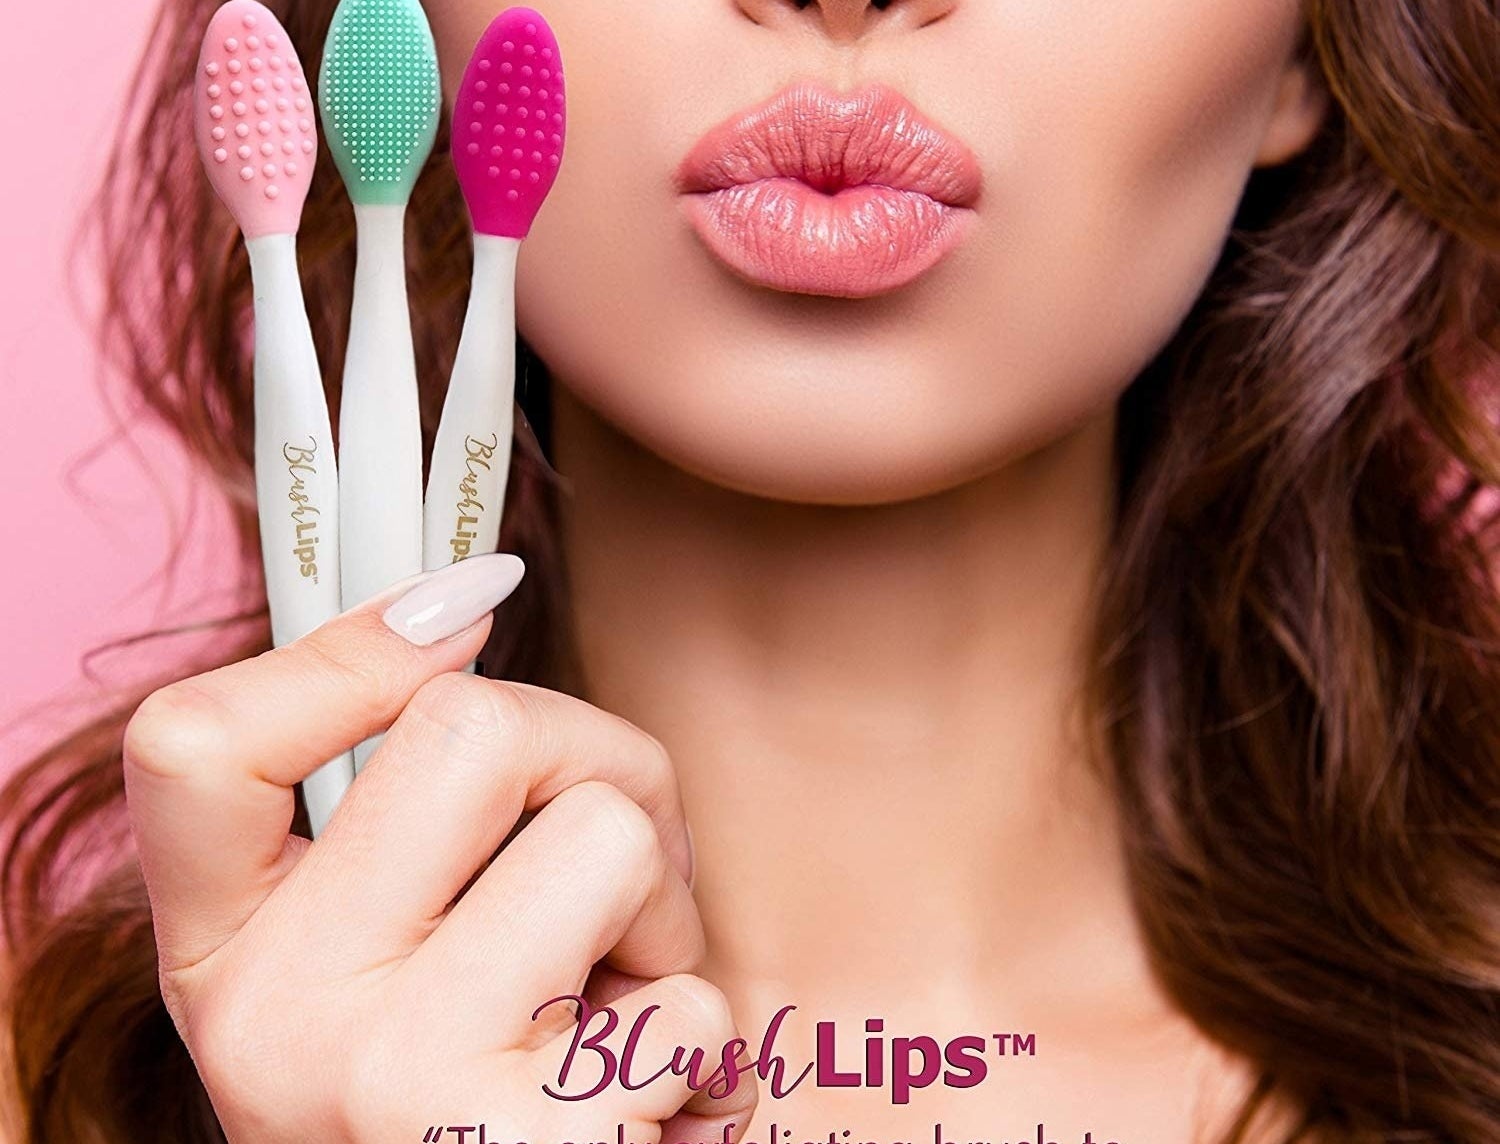 Model holding the lip brushes